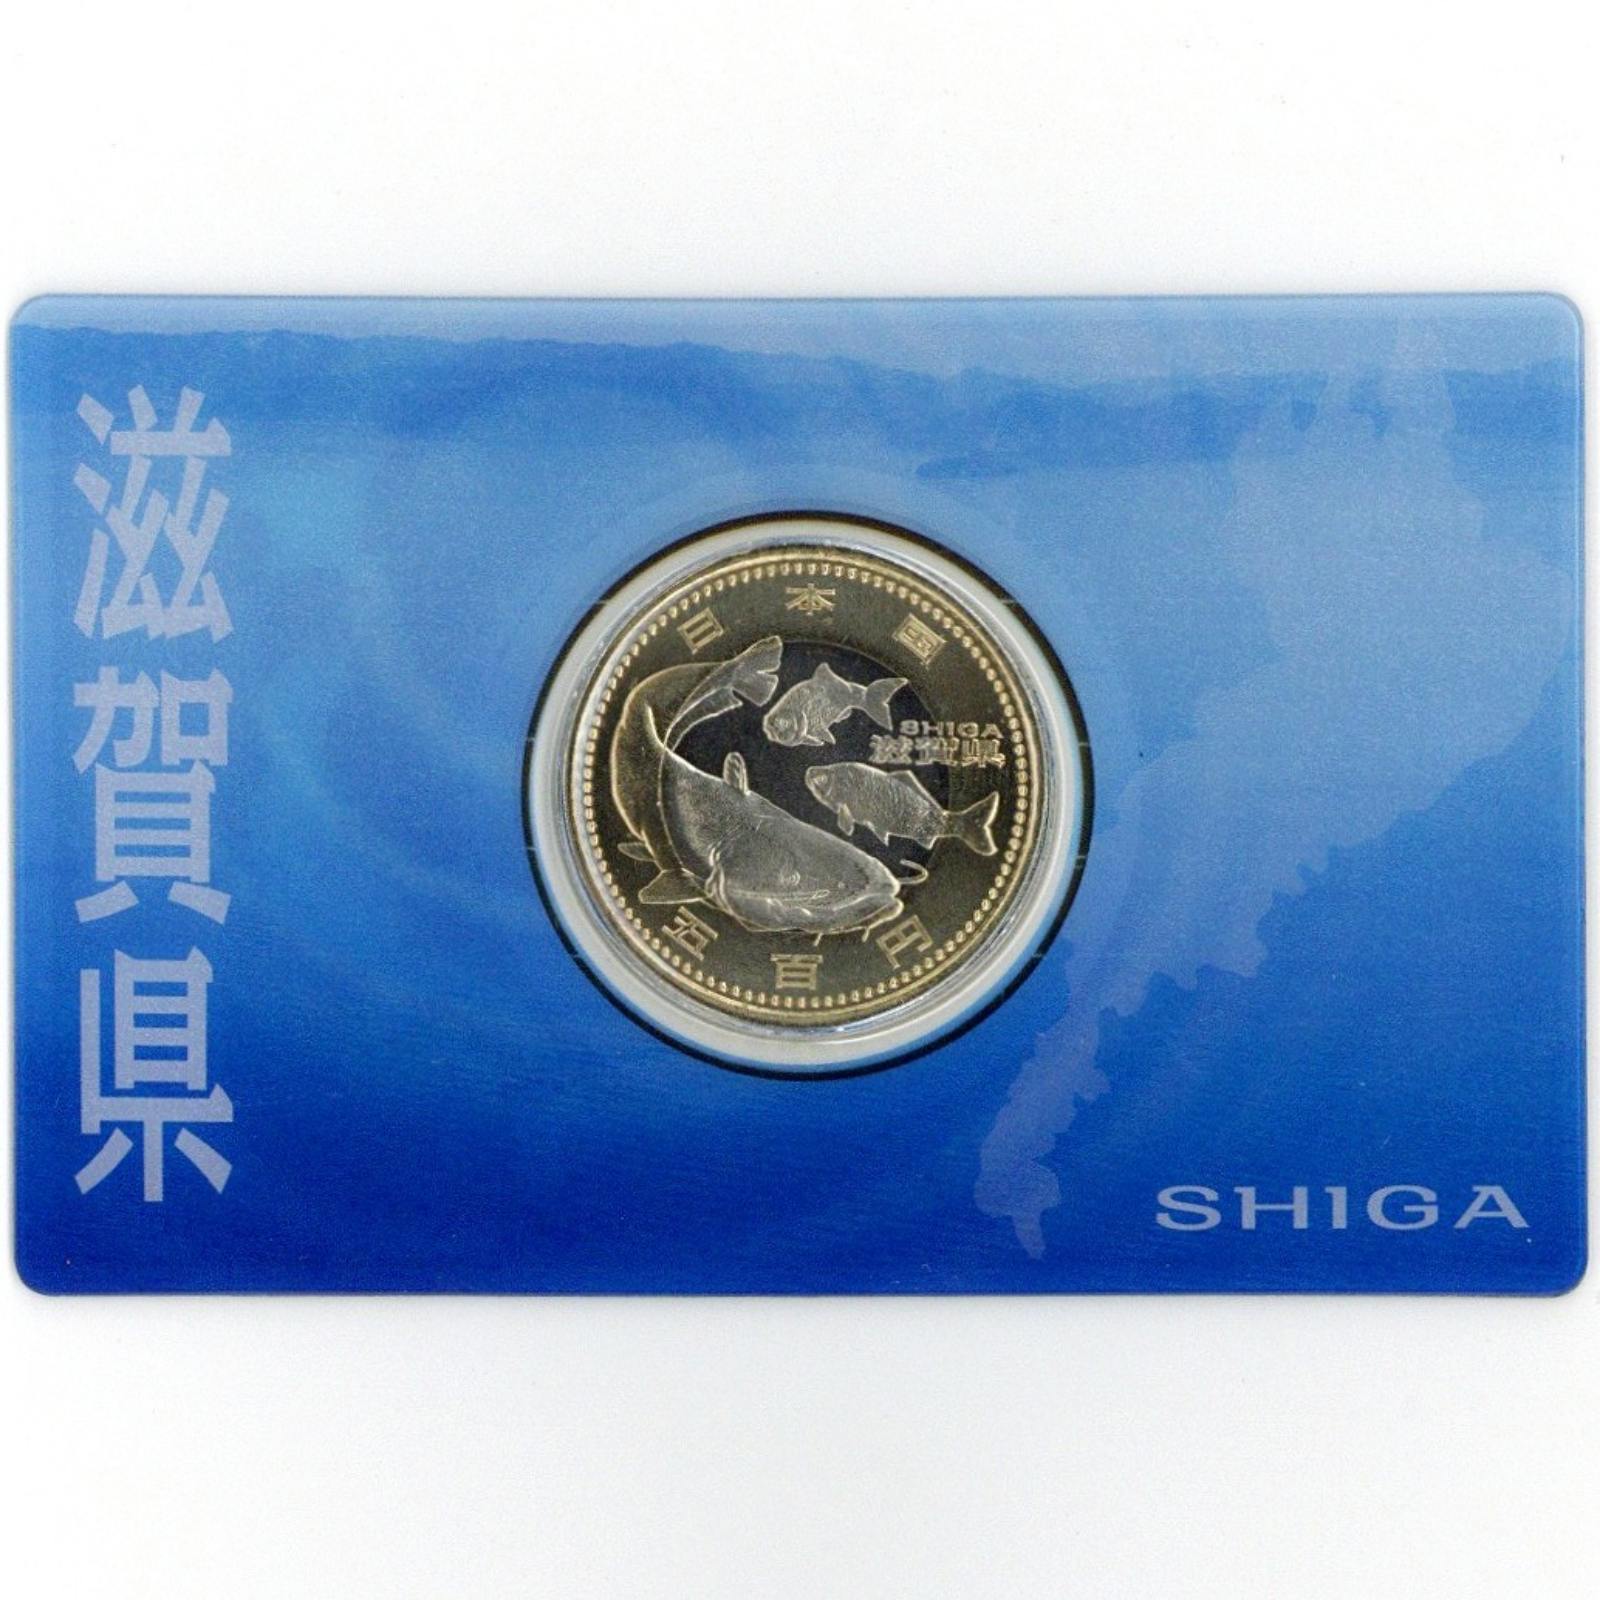 地方自治 60周年記念500円バイカラー・クラッド貨幣カード 滋賀県 